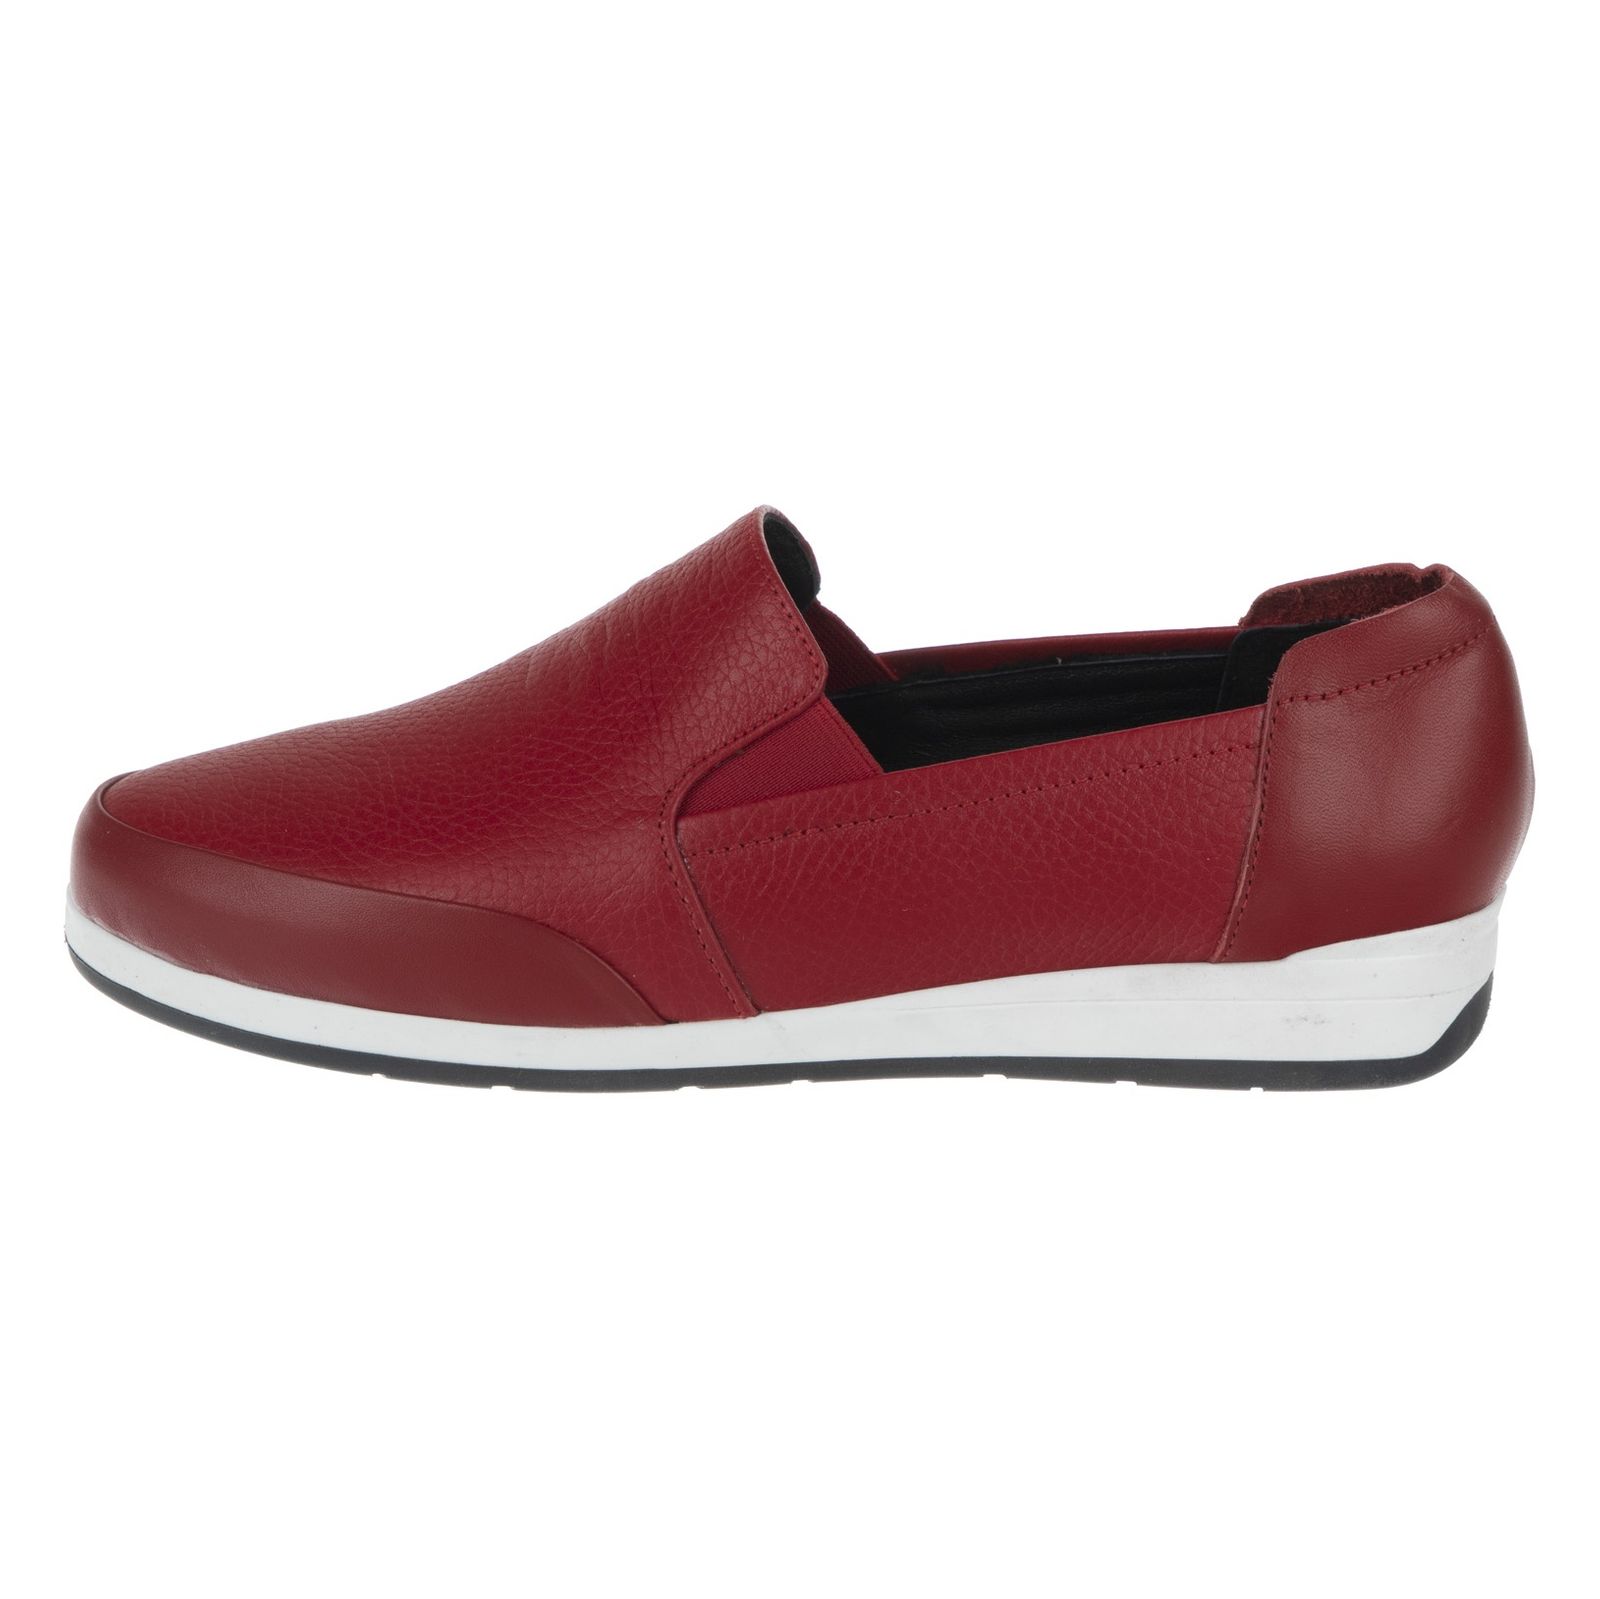 کفش روزمره زنانه شیفر مدل 5275A-102 - قرمز - 2